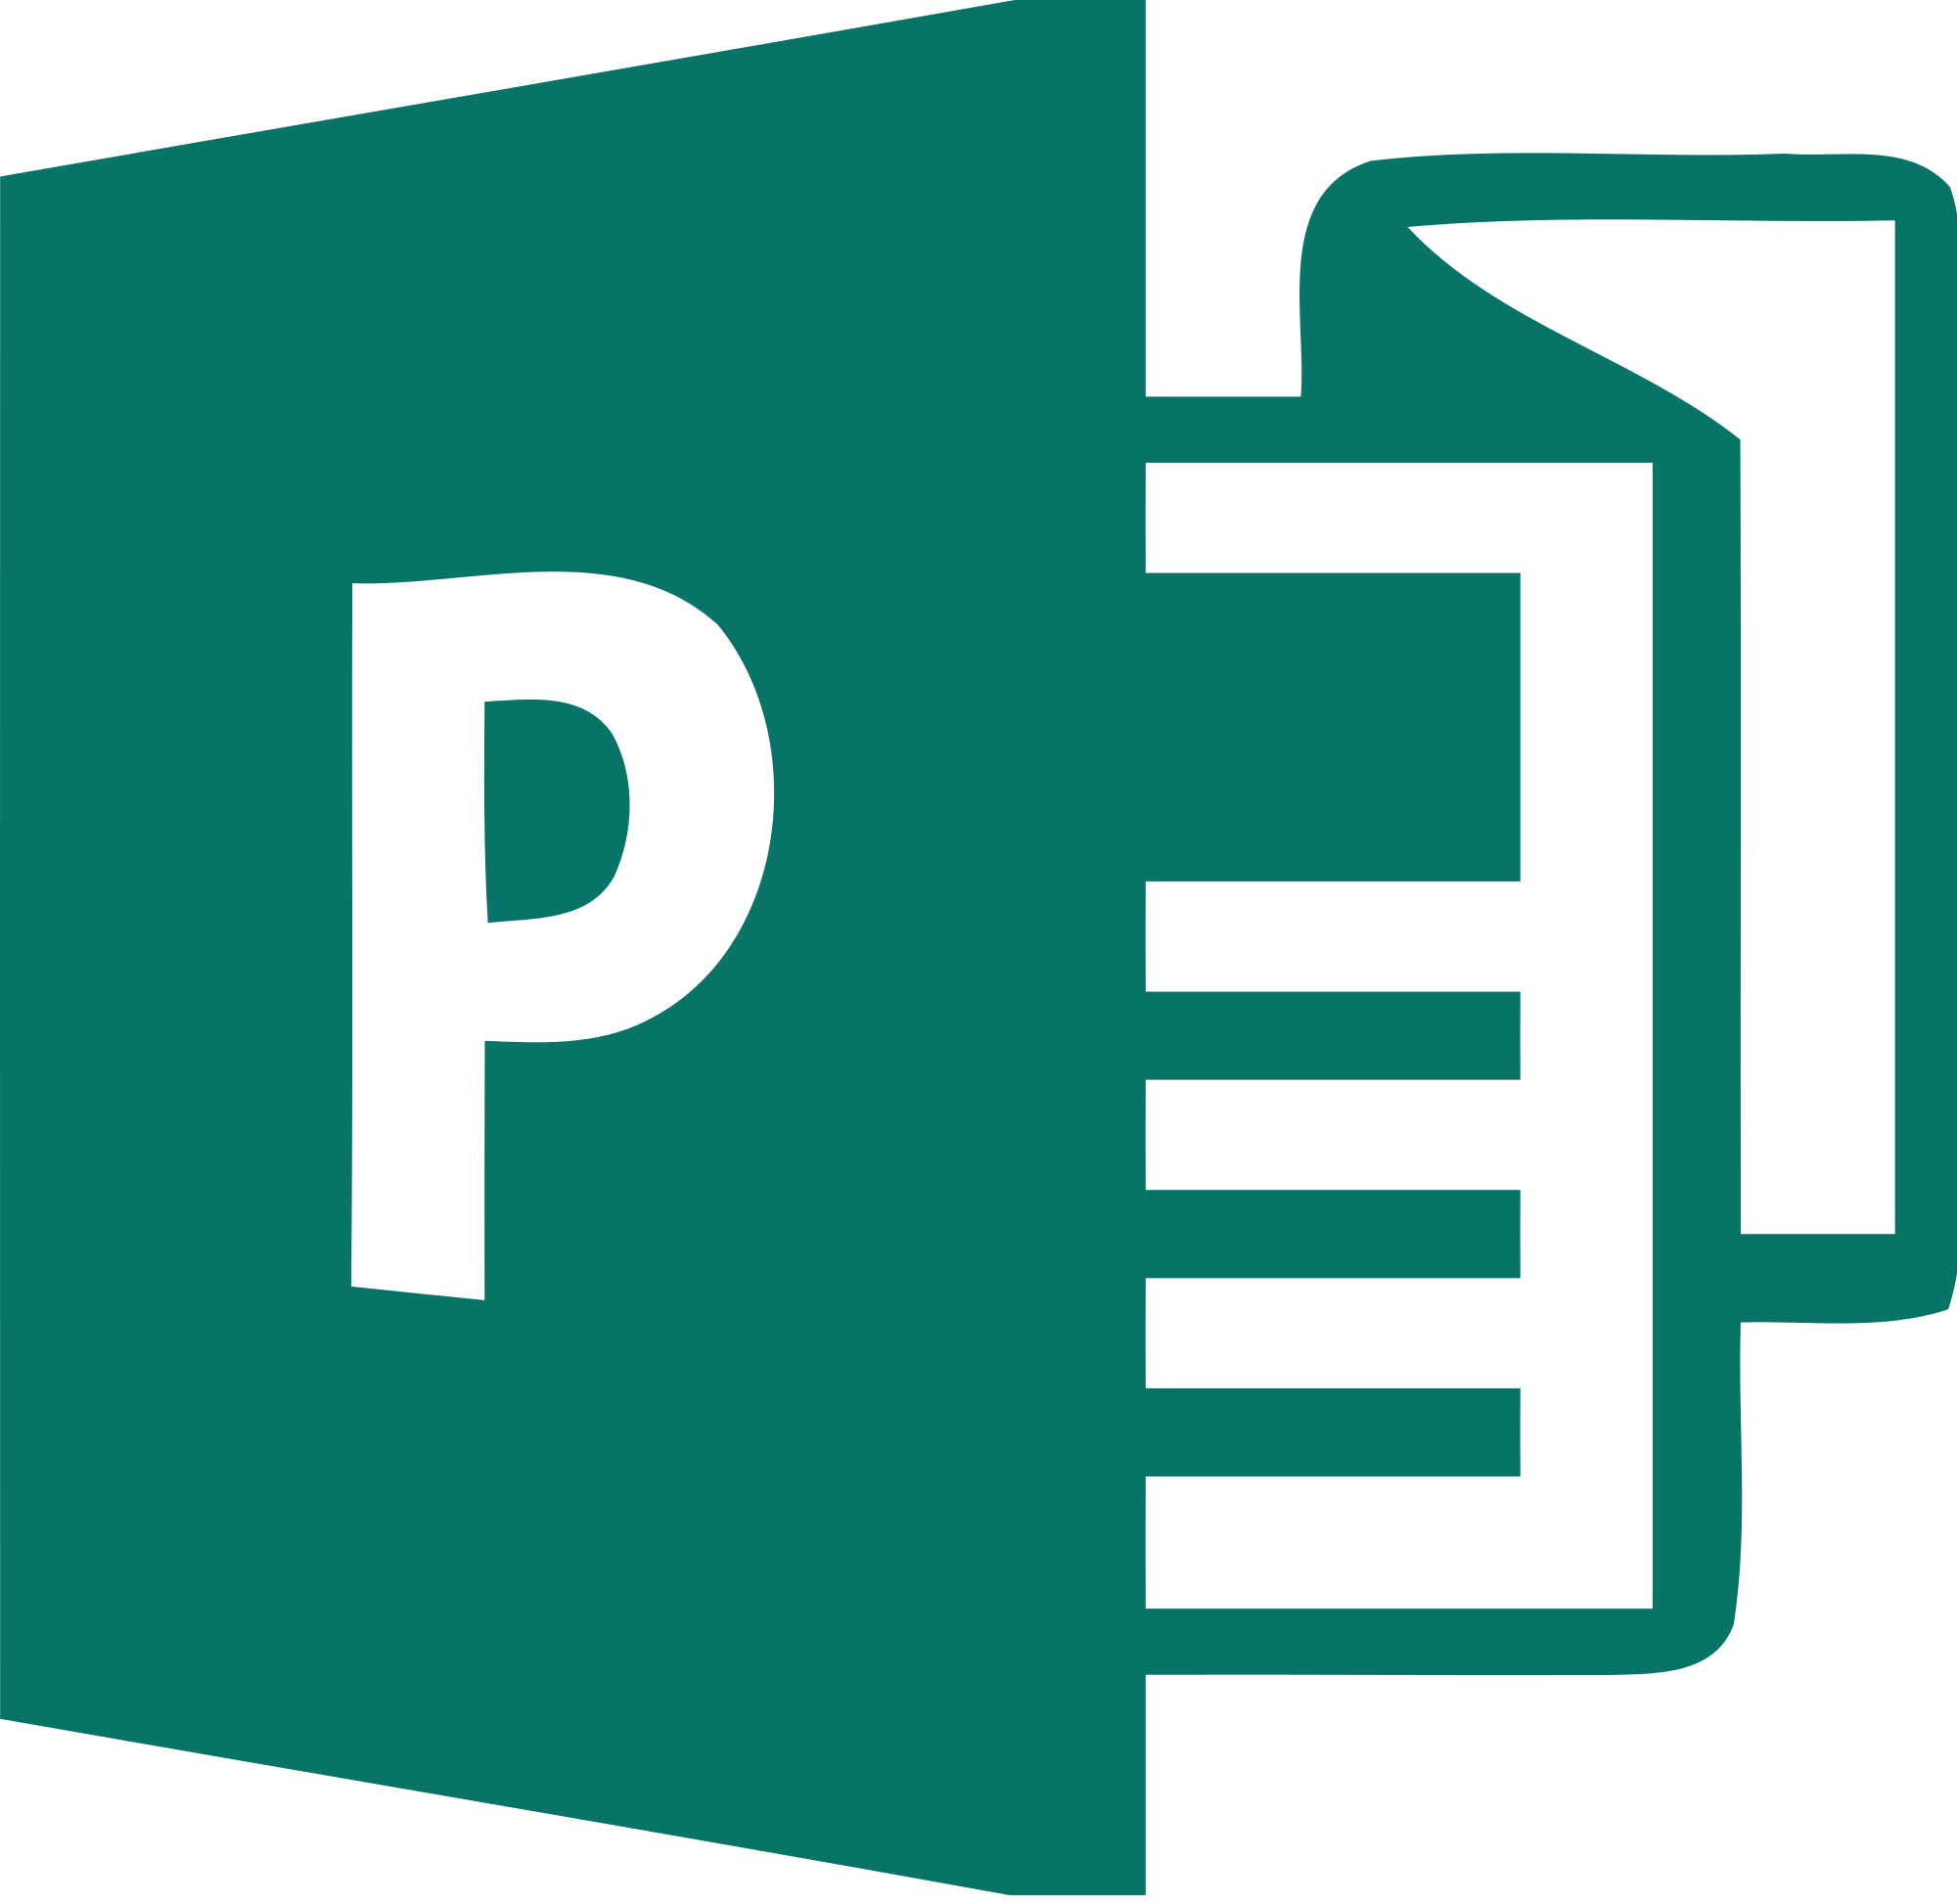 Publisher Logo - File:Microsoft Publisher 2013 logo.svg - Wikimedia Commons